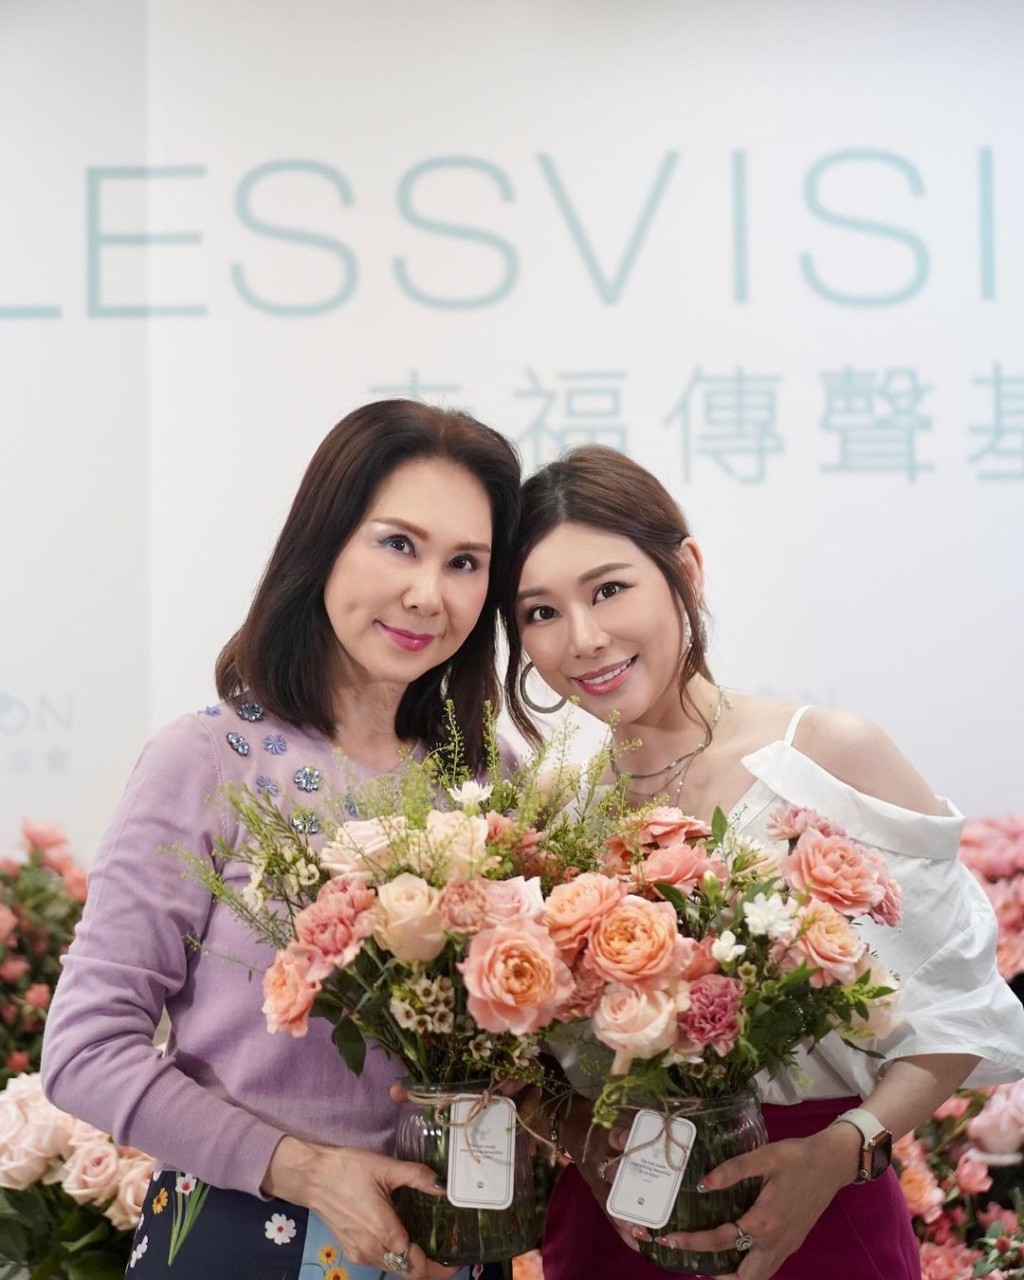 寇鸿萍上月曾分享由女儿唐贝诗陪同下出席慈善插花活动。